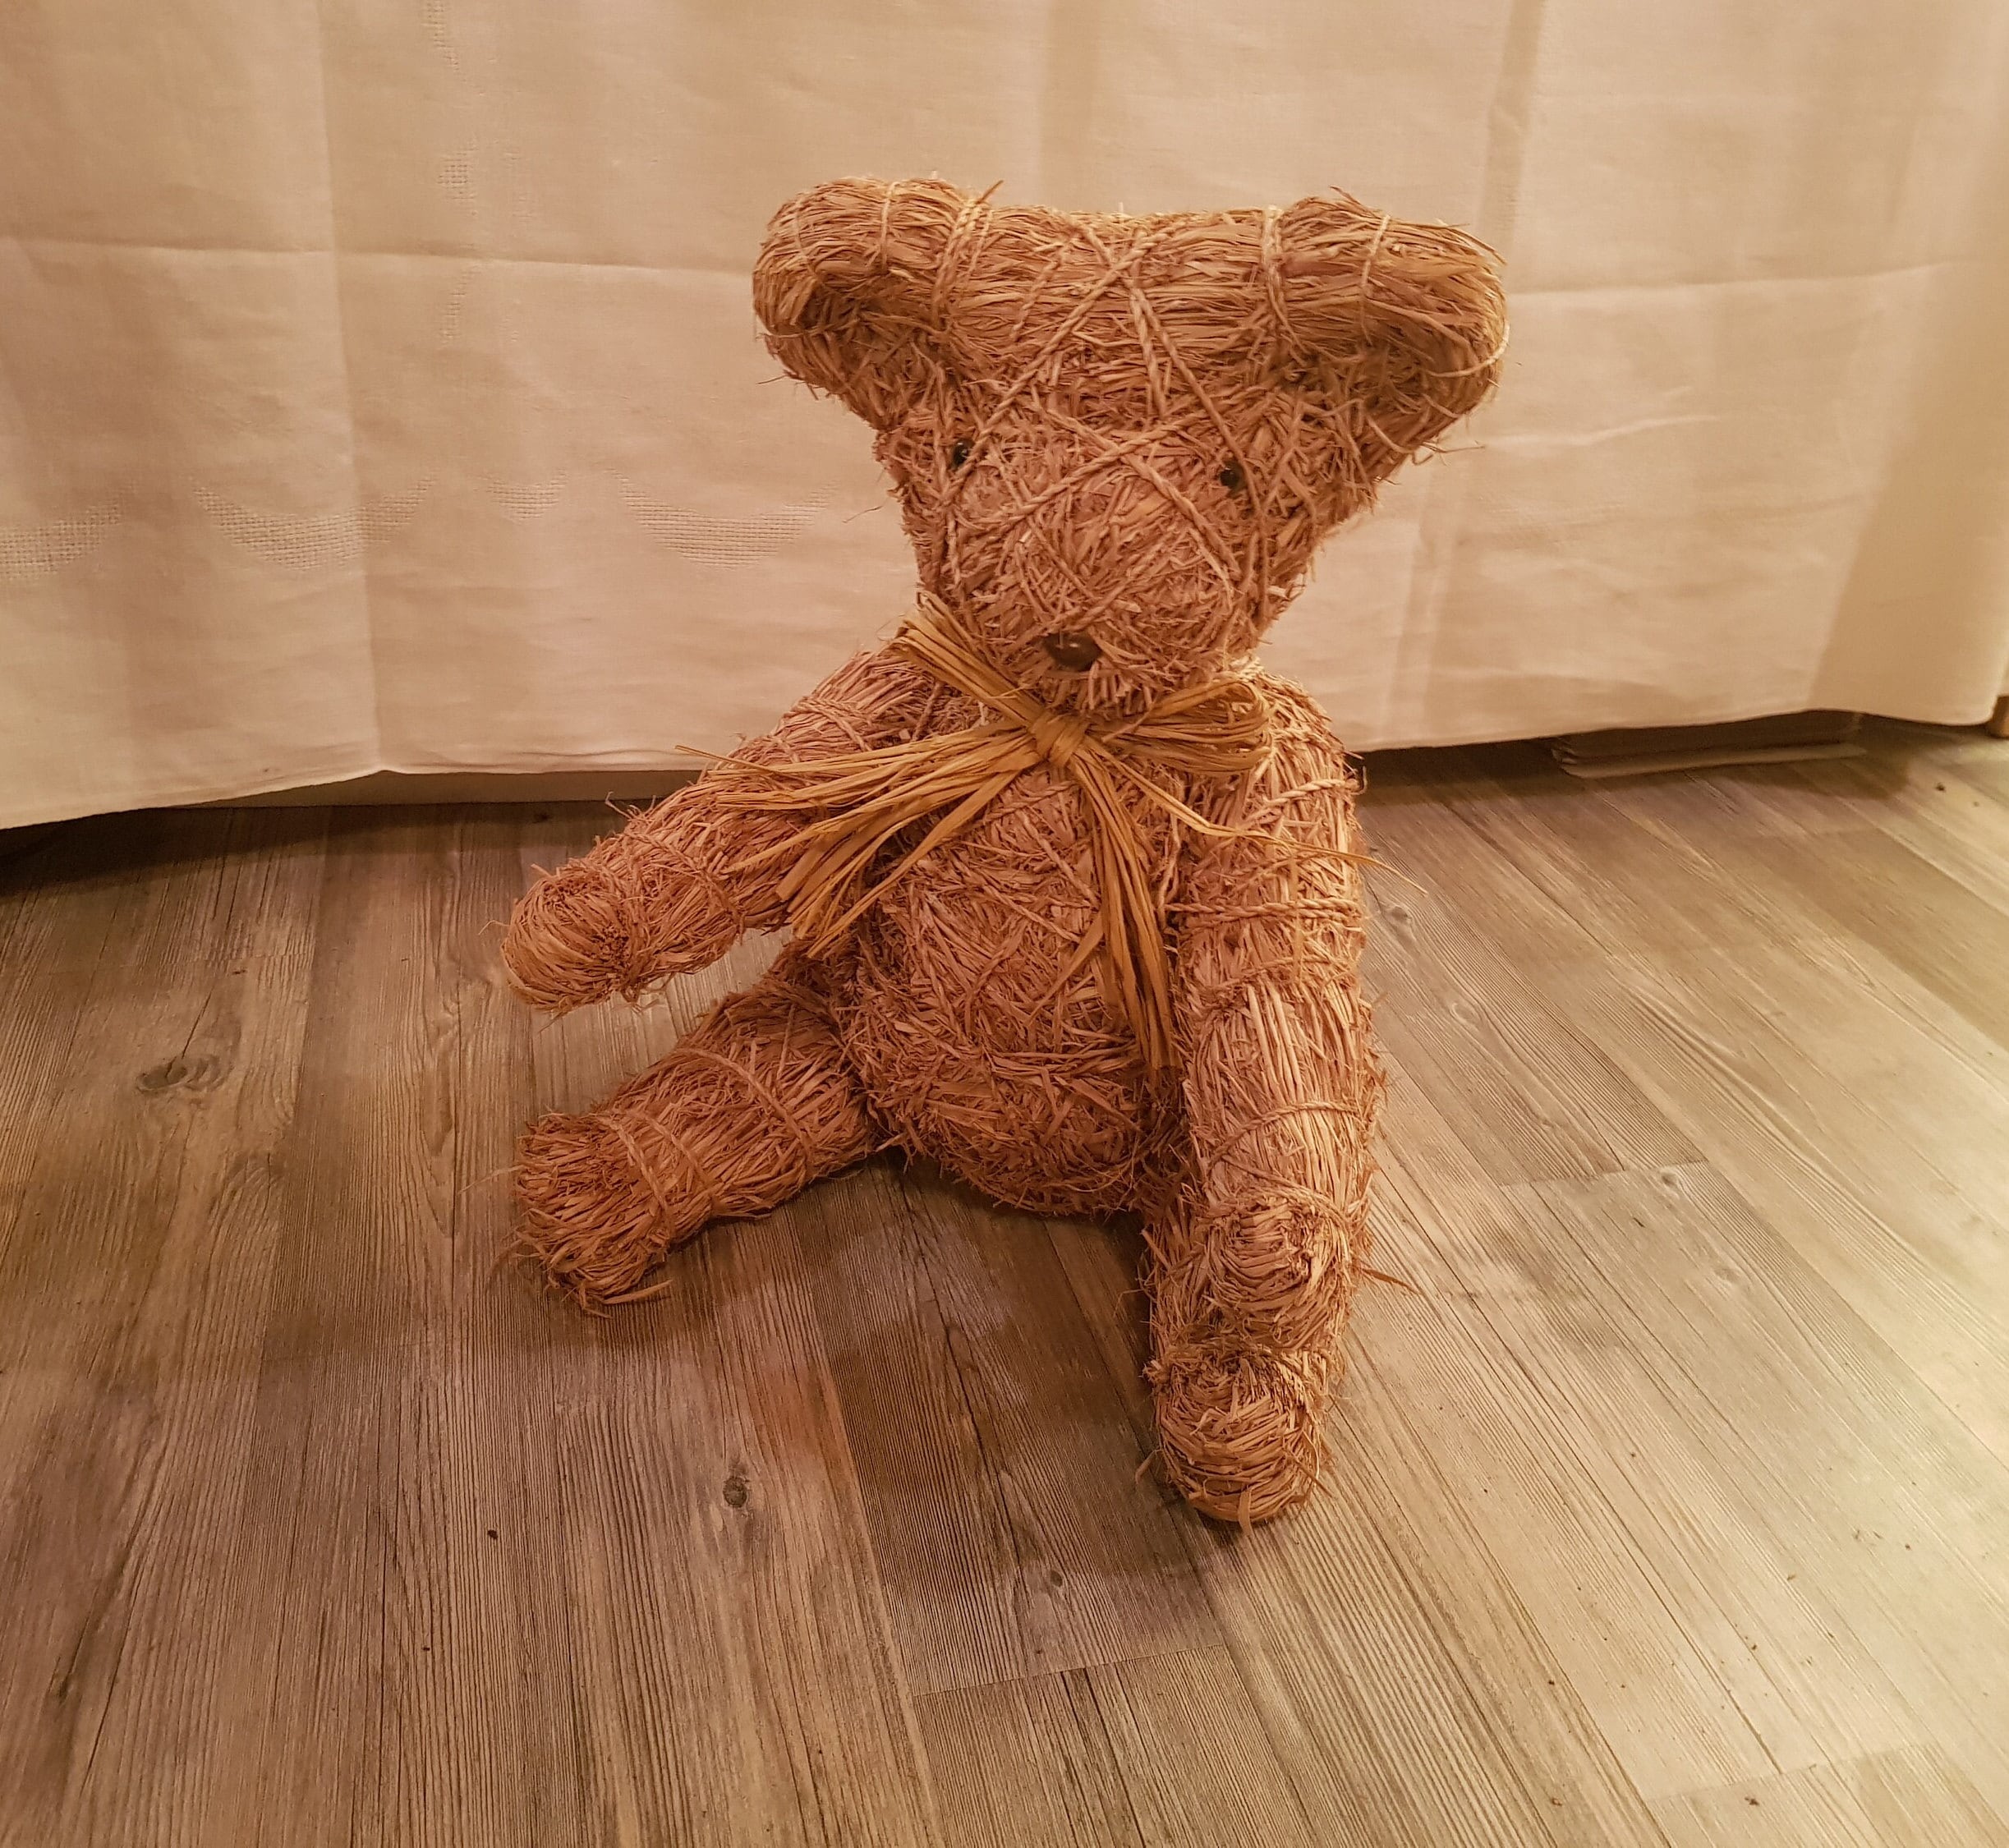 Llavero Pack Teddy oso de rafia + pañuelo marrón